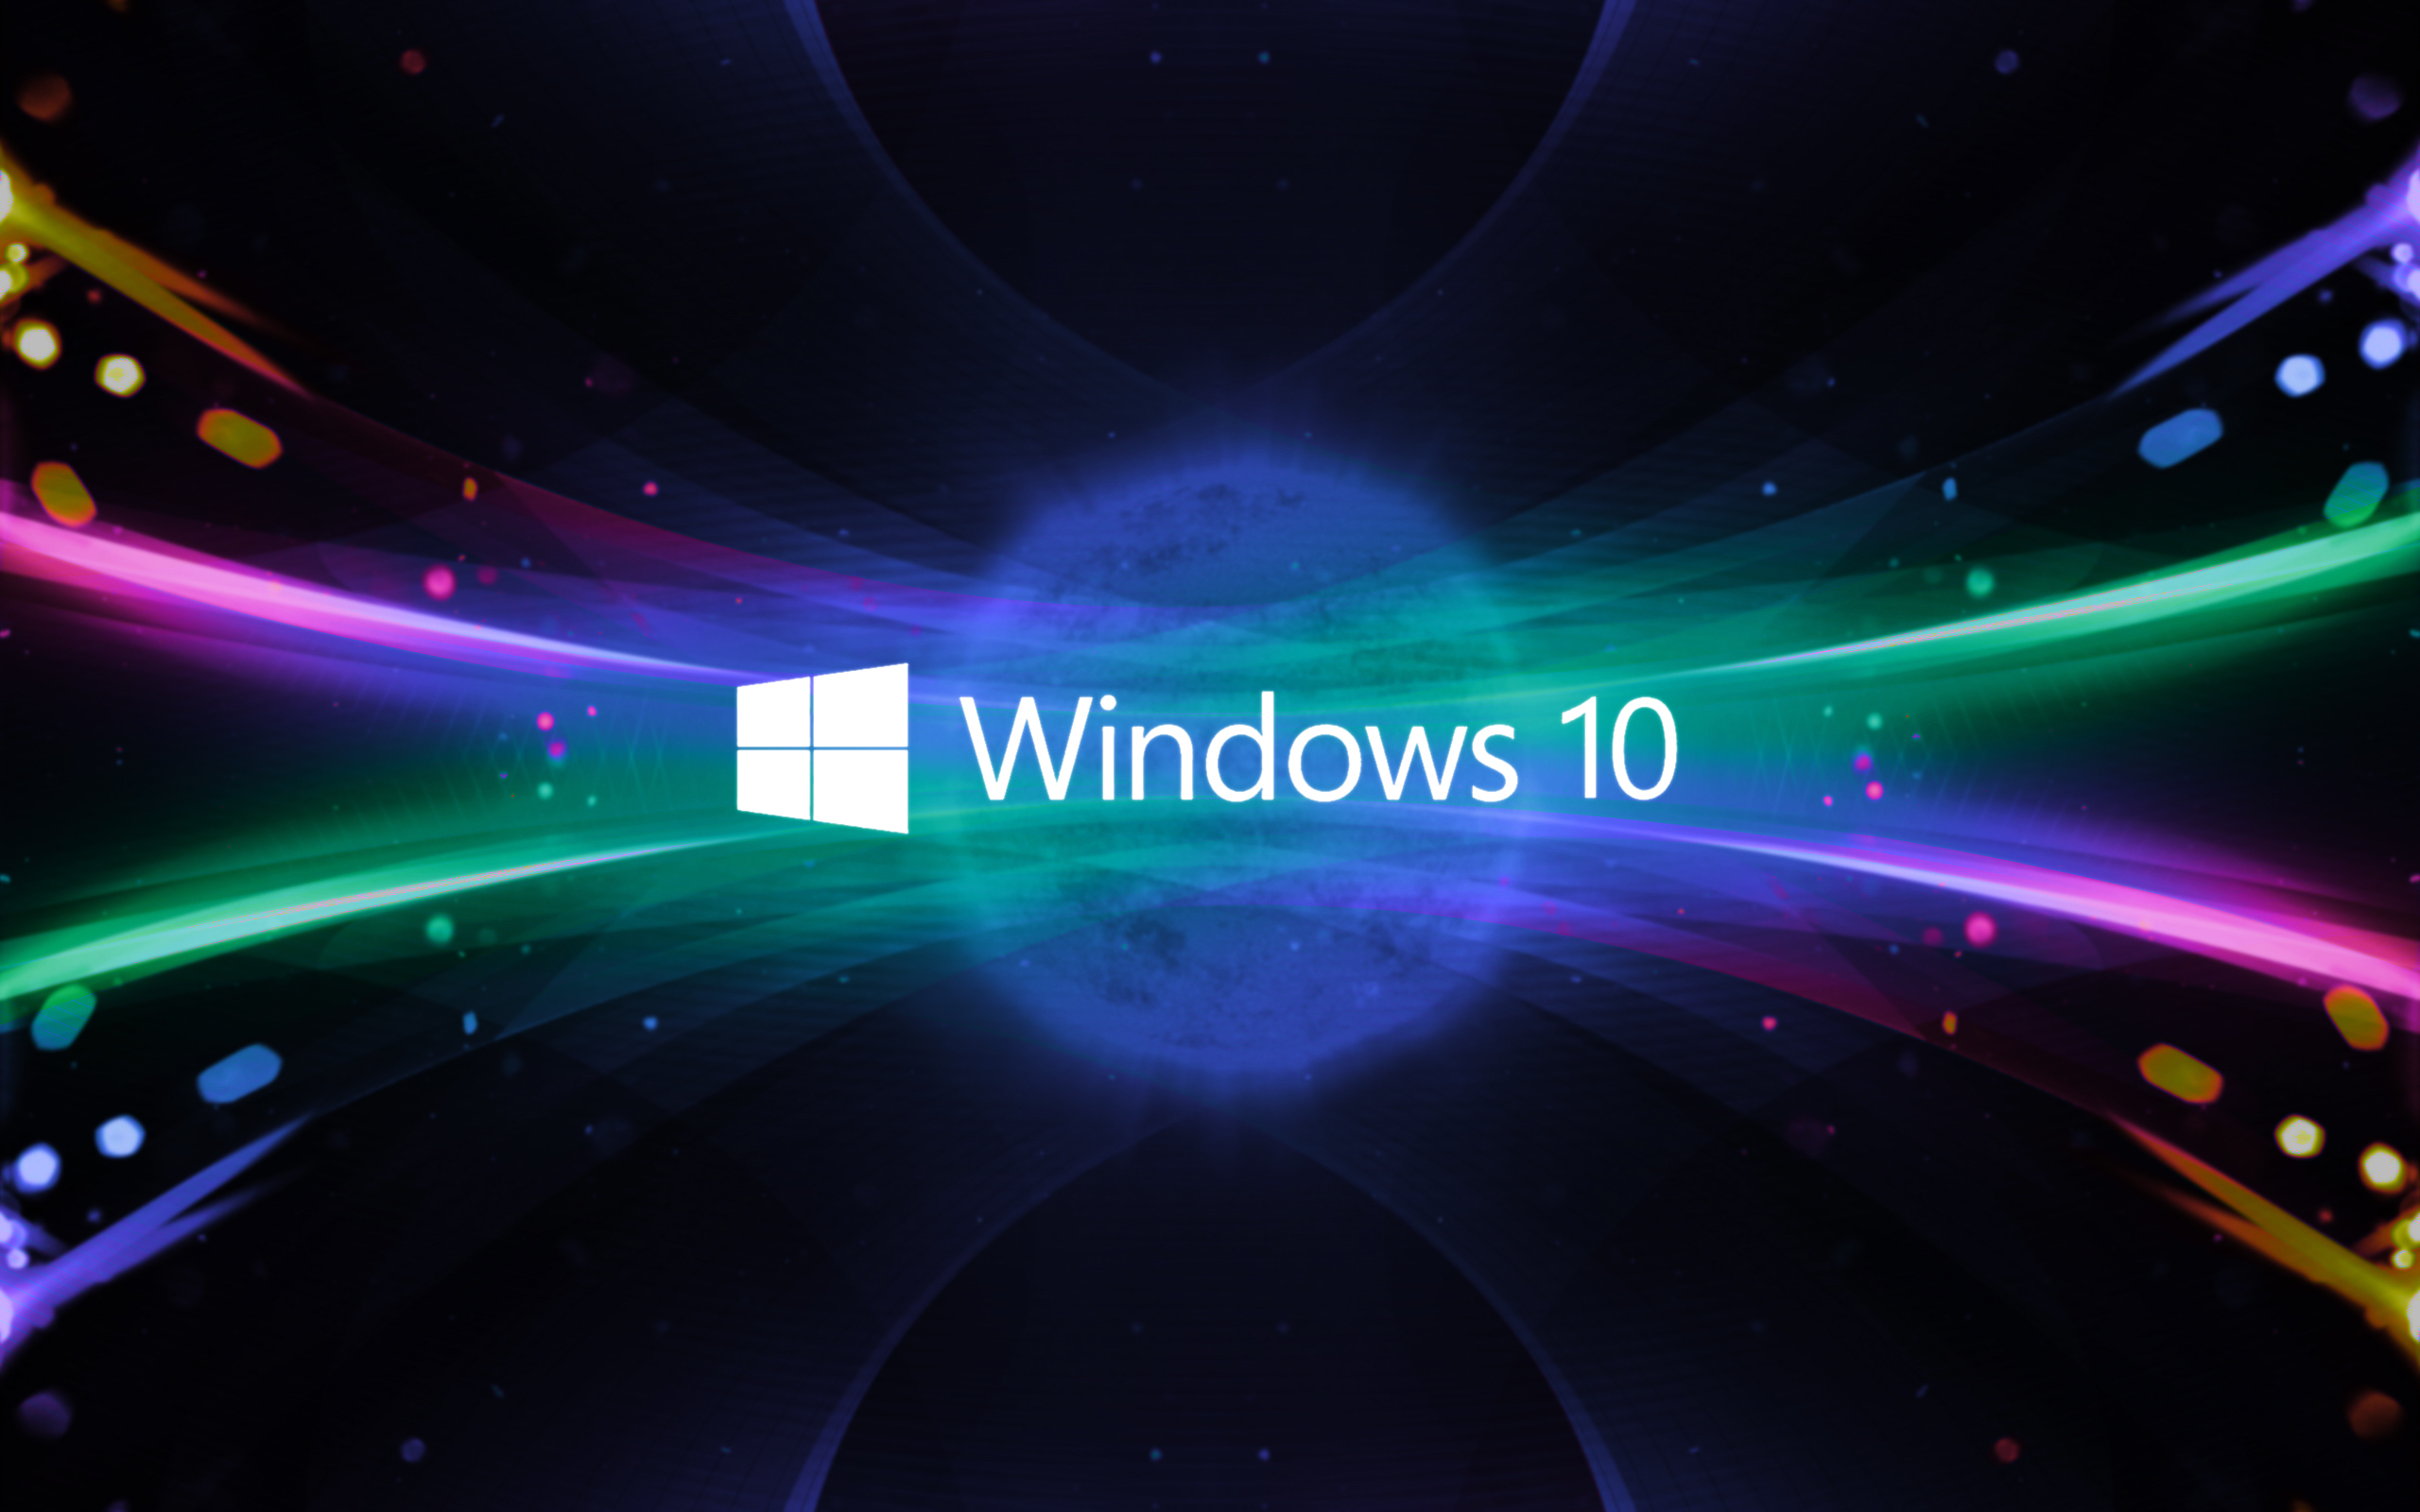 Bạn đã sẵn sàng tận hưởng trải nghiệm mới nhất với Windows 10? Nâng cấp ngay hôm nay để trải nghiệm tính năng đầy đủ và mượt mà hơn, hỗ trợ tối đa cho ứng dụng và trò chơi yêu thích của bạn.